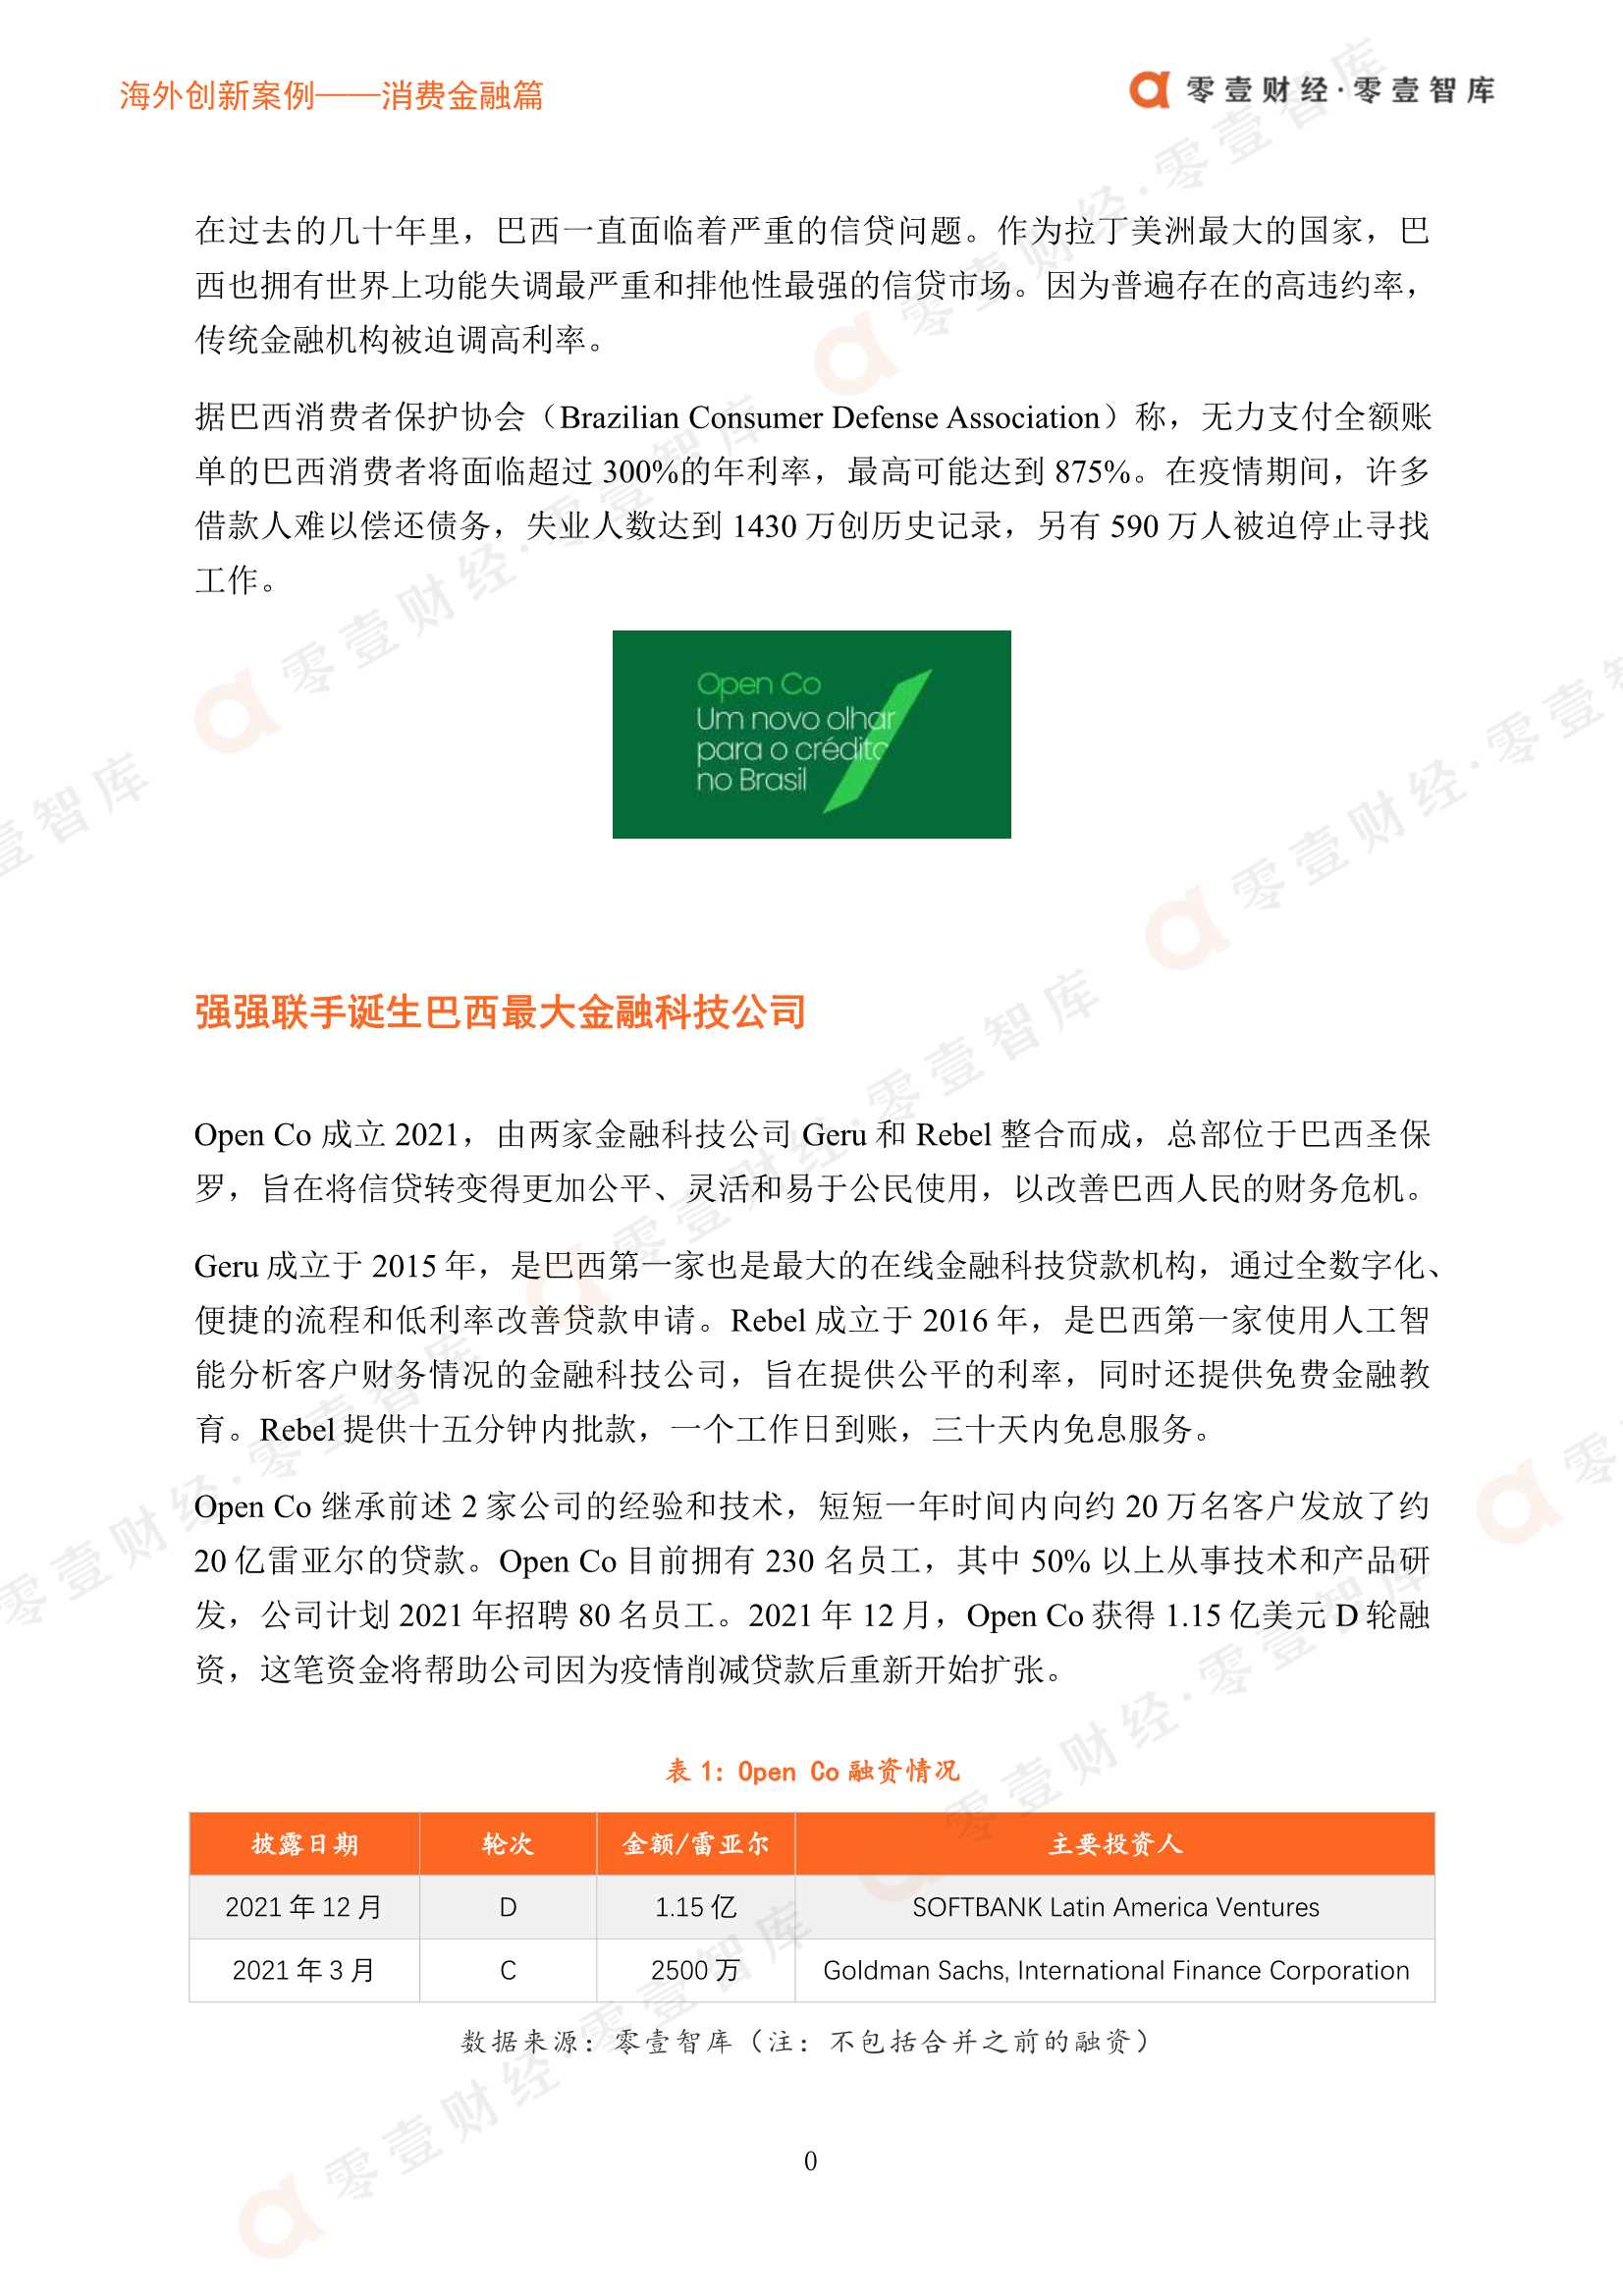 零壹智库-海外创新案例 Open Co： 两大金融科技公司整合而成的信贷市场黑马-2022.01-9页